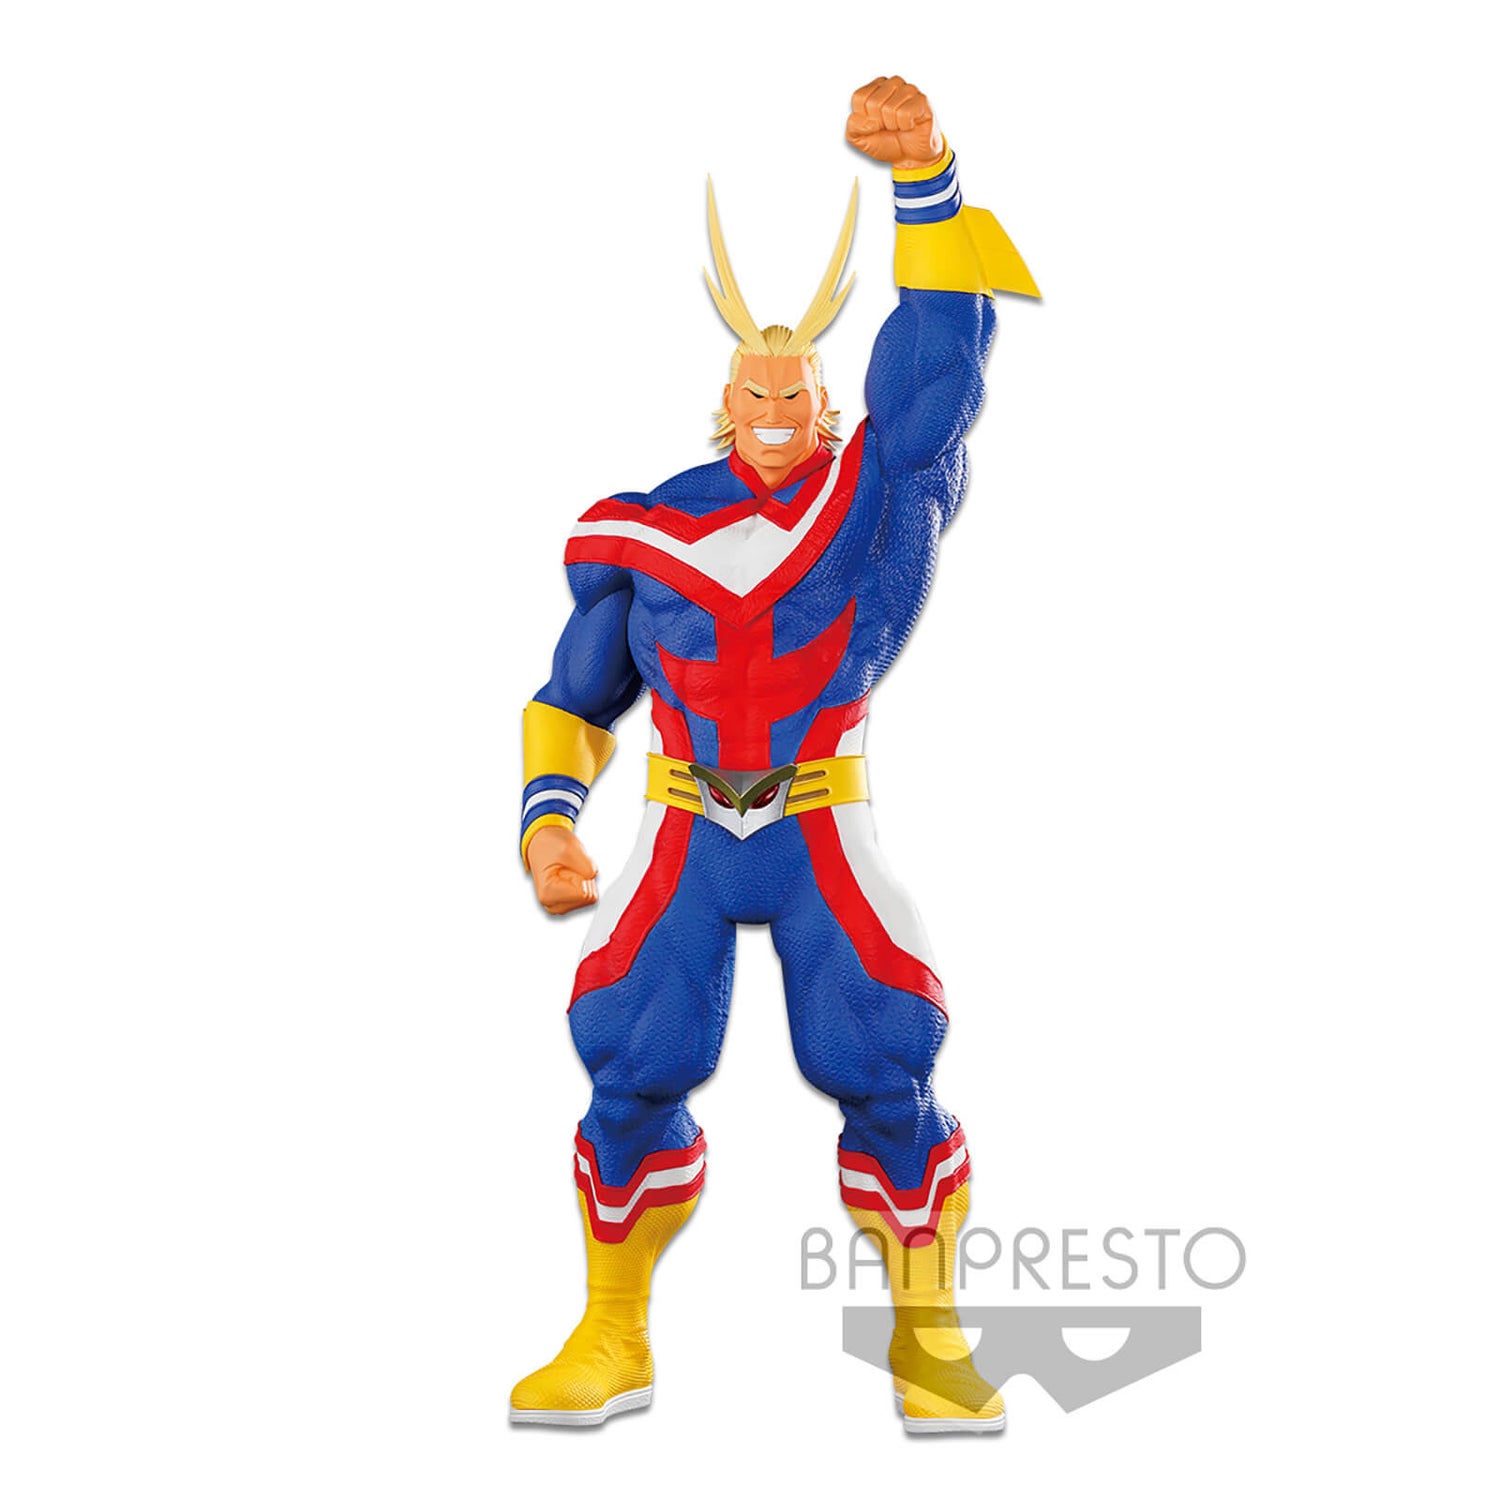 Banpresto Super Master Stars Piece My Hero Academia All Might Statue - The Anime Statue